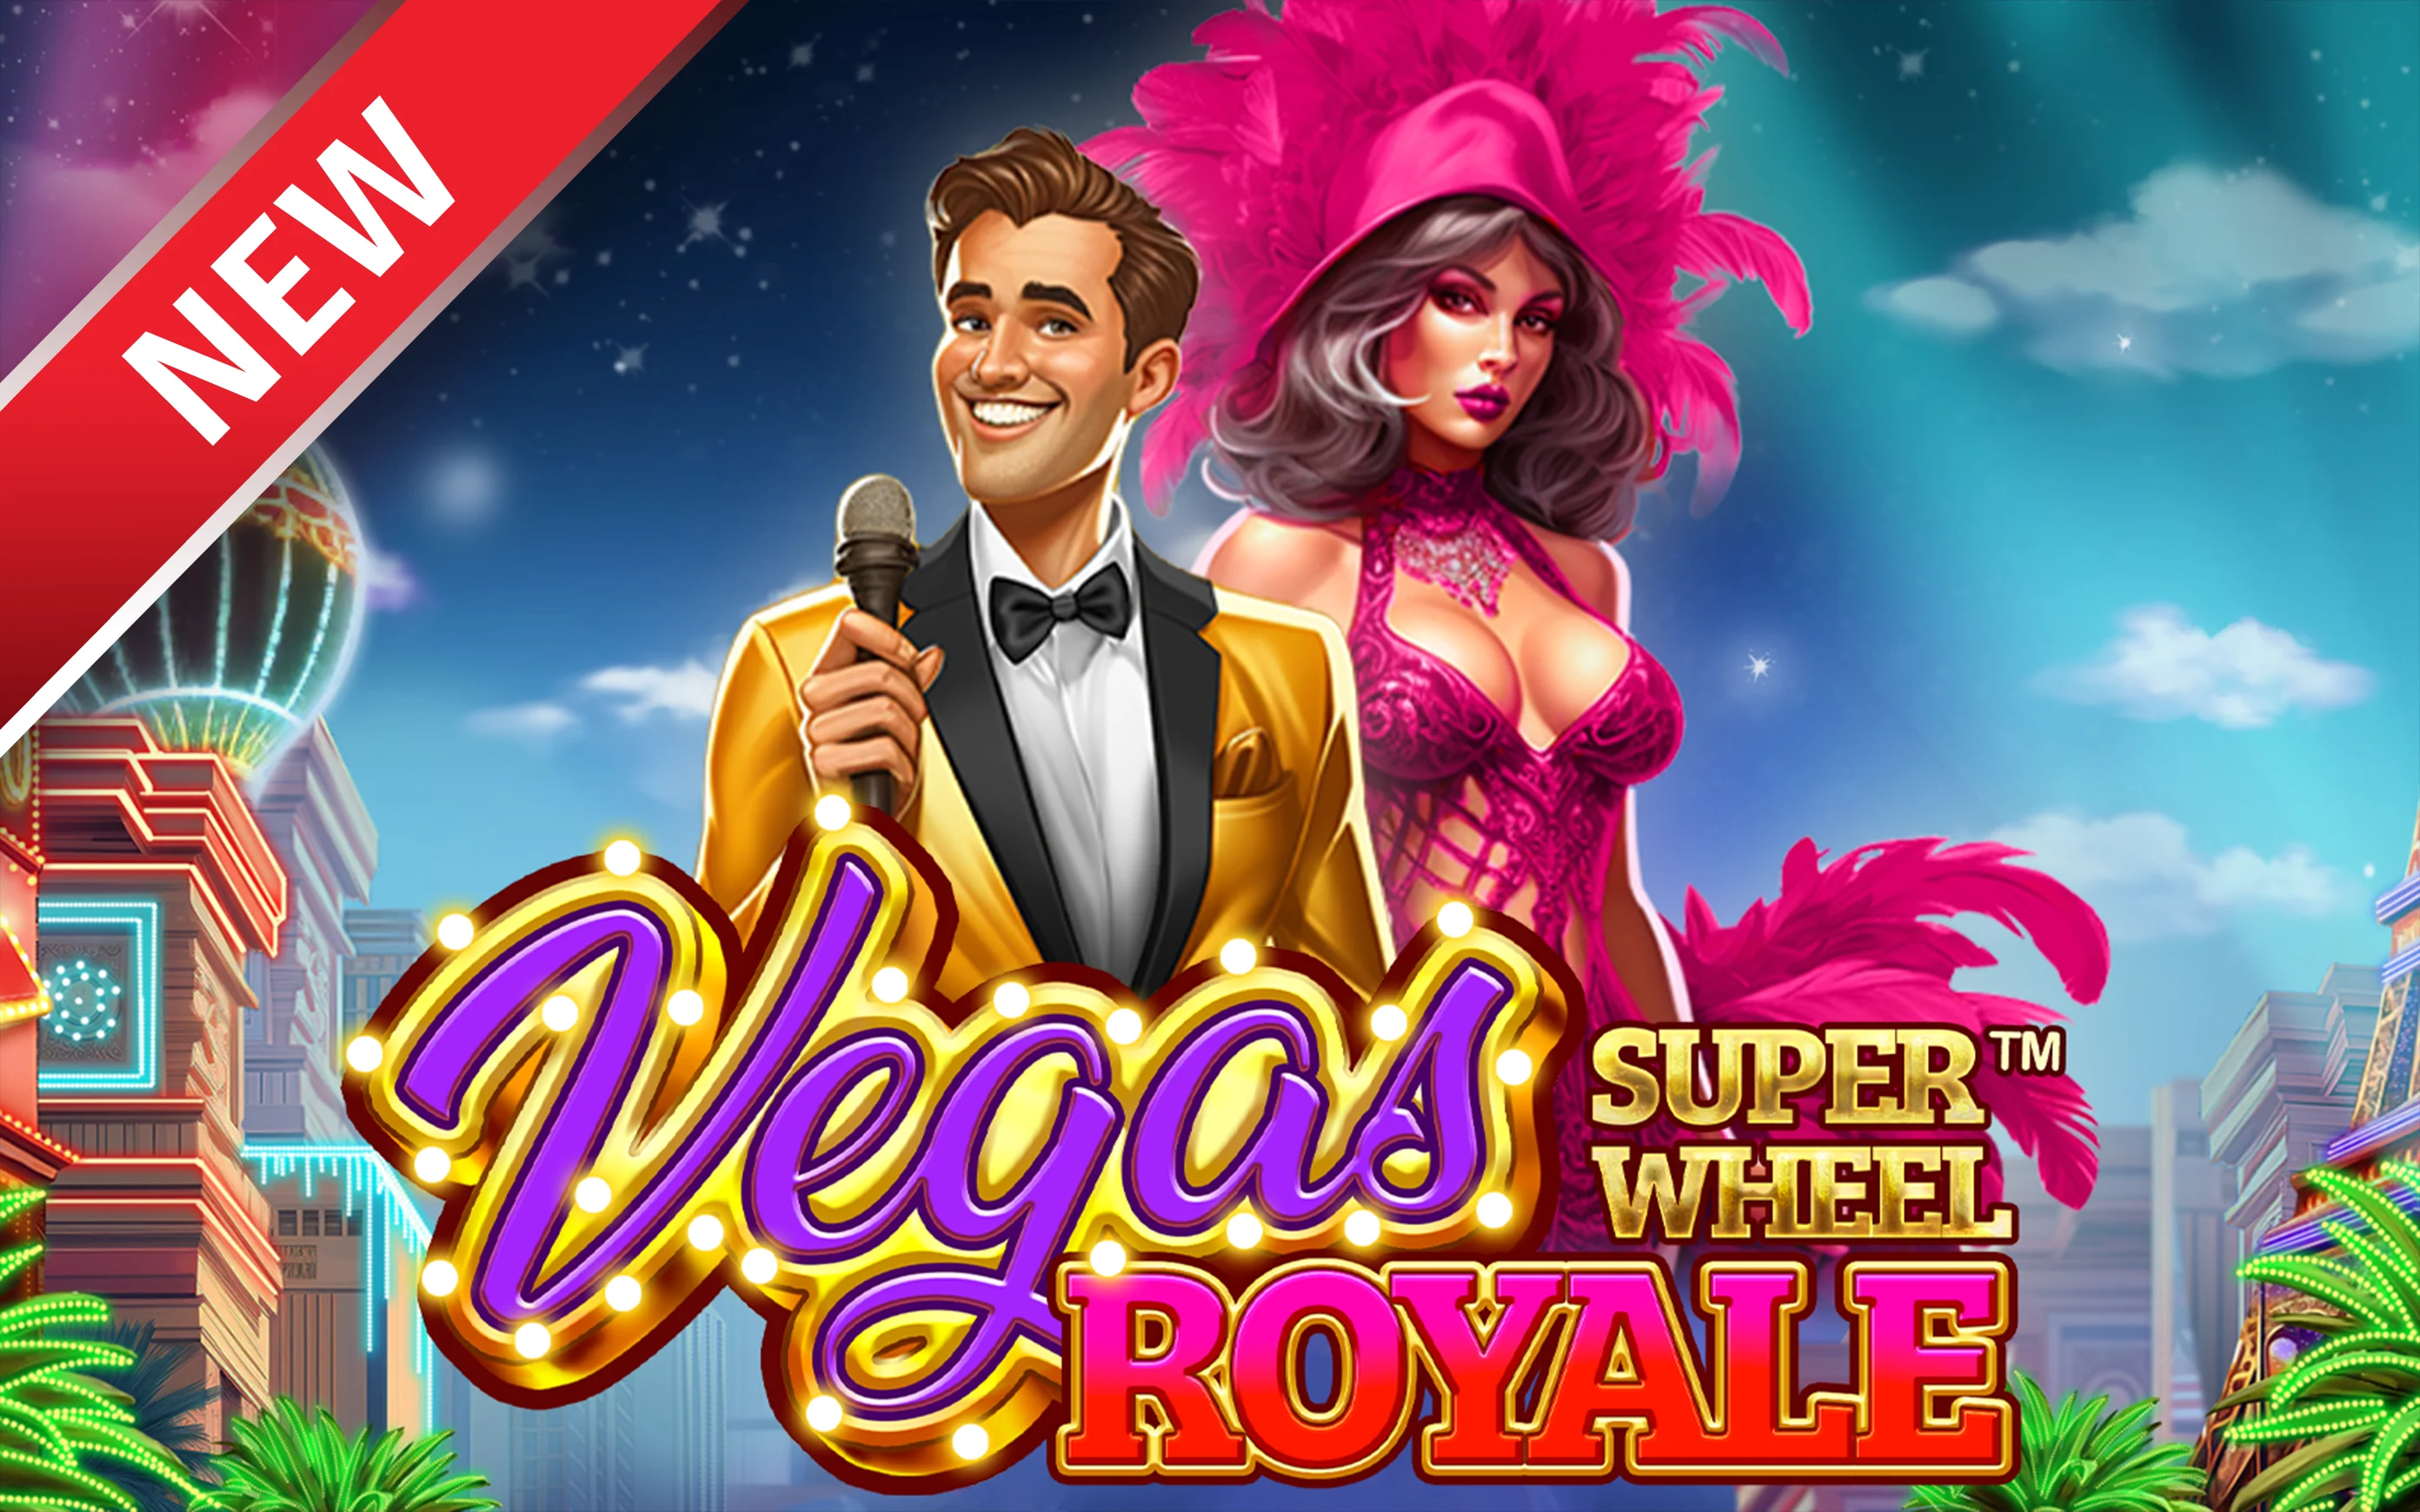 เล่น Vegas Royale Super Wheel™ บนคาสิโนออนไลน์ Starcasino.be